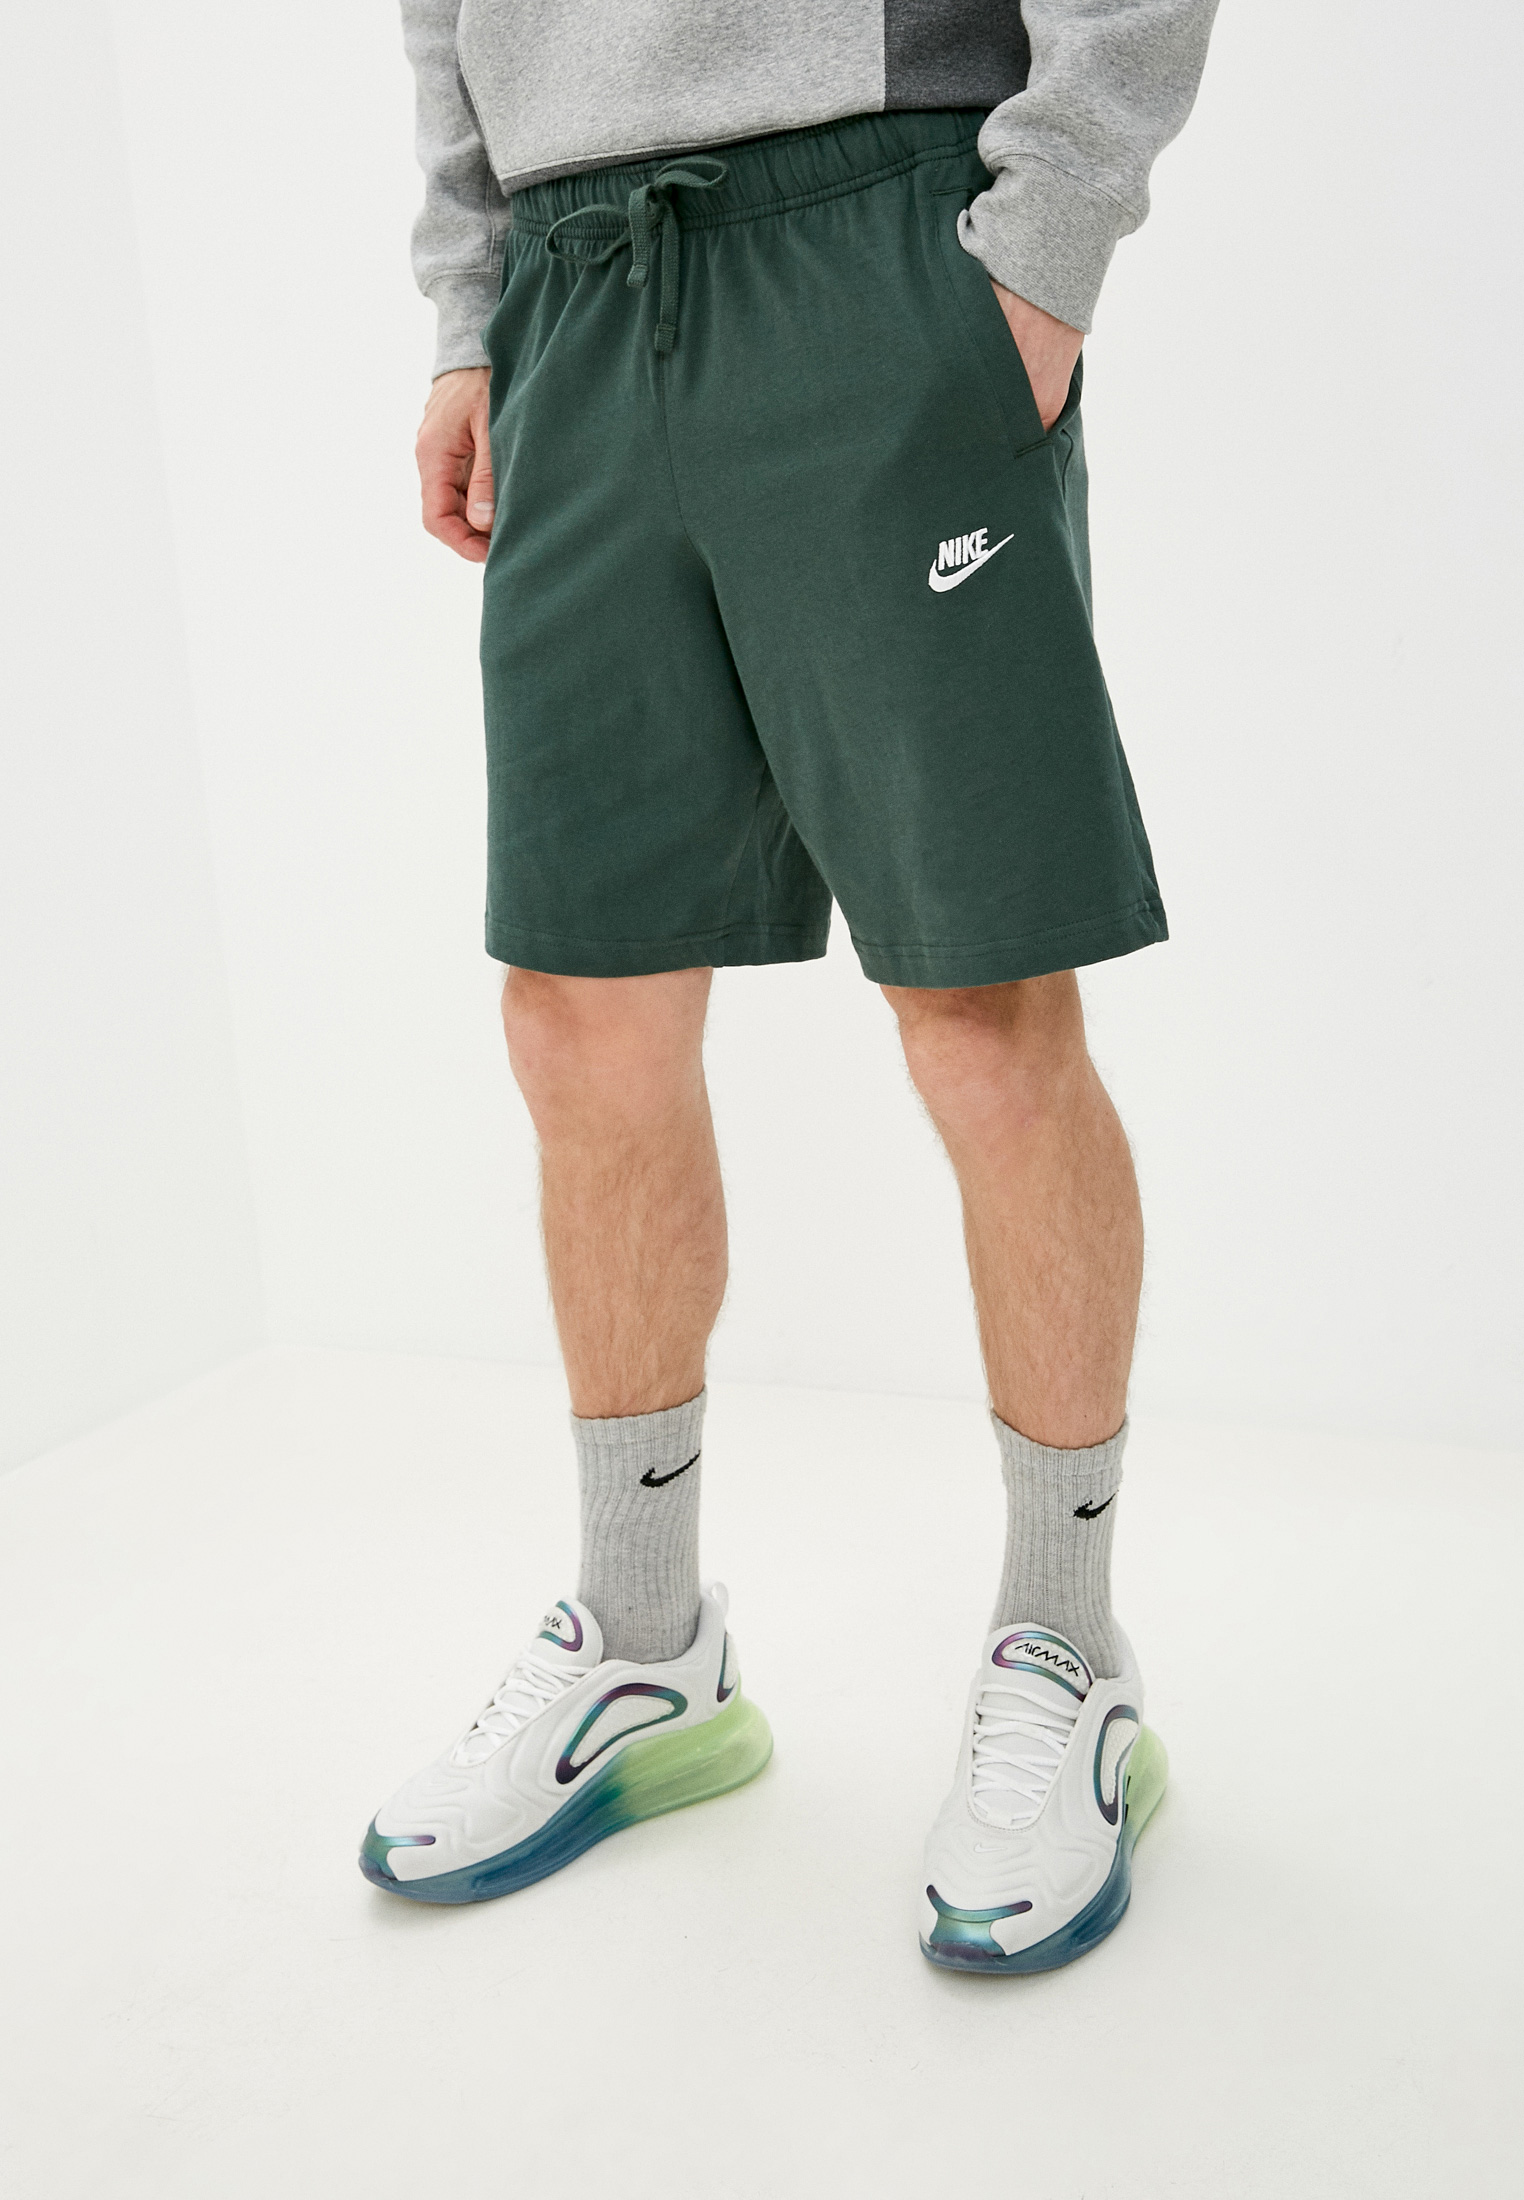 Шорты спортивные Nike M NSW CLUB SHORT JSY, цвет: зеленый, NI464EMLZOL9 —  купить в интернет-магазине Lamoda